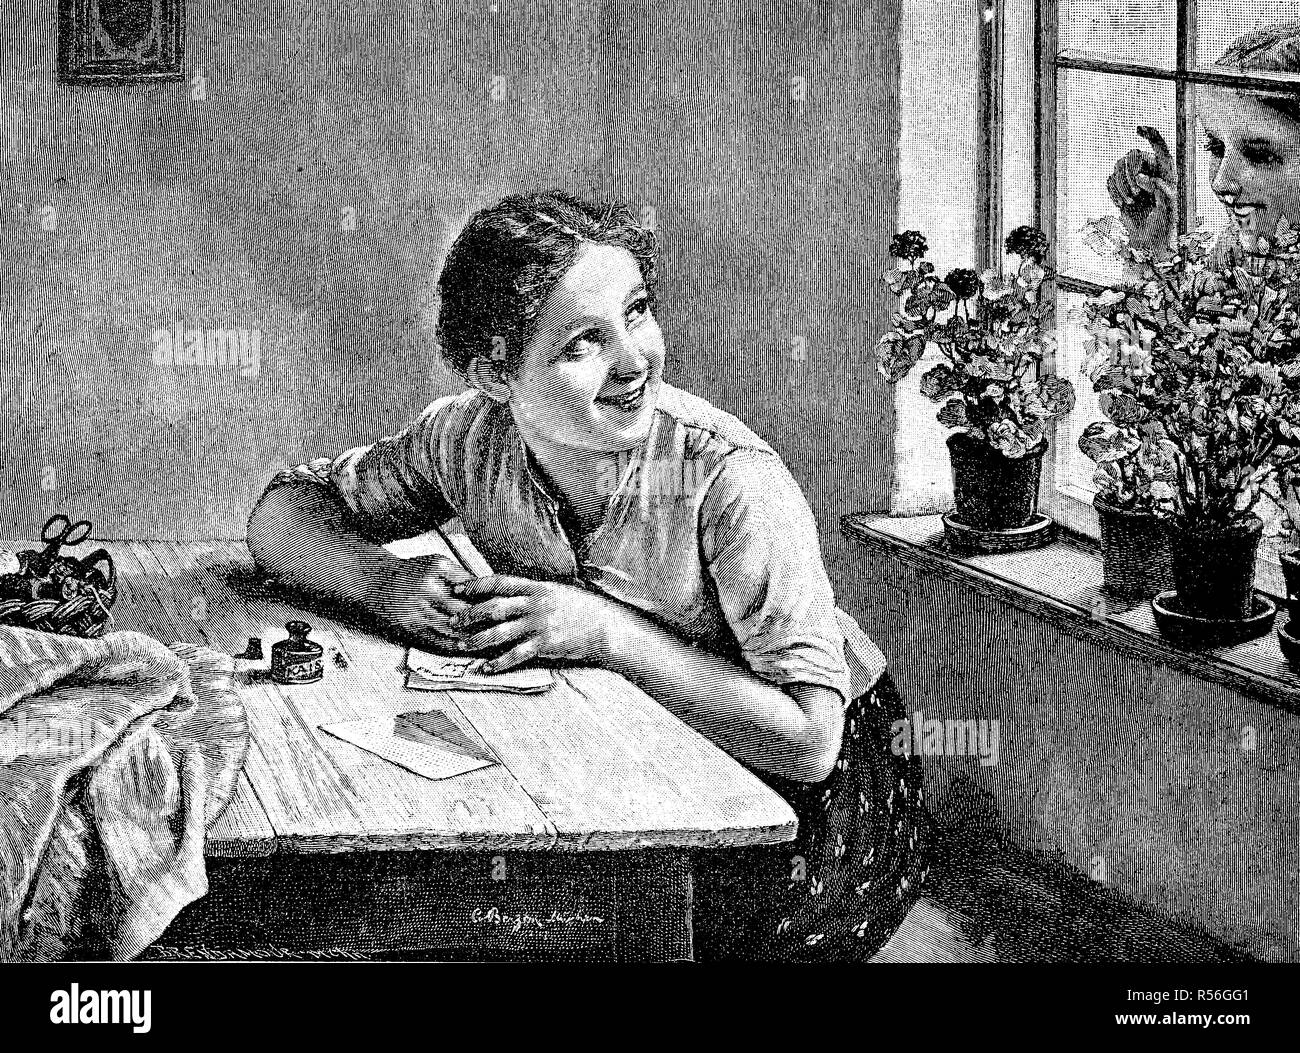 Lettera segreta, ragazza segretamente scrive una lettera, ragazza guarda attraverso la finestra, 1880, xilografia, Germania Foto Stock